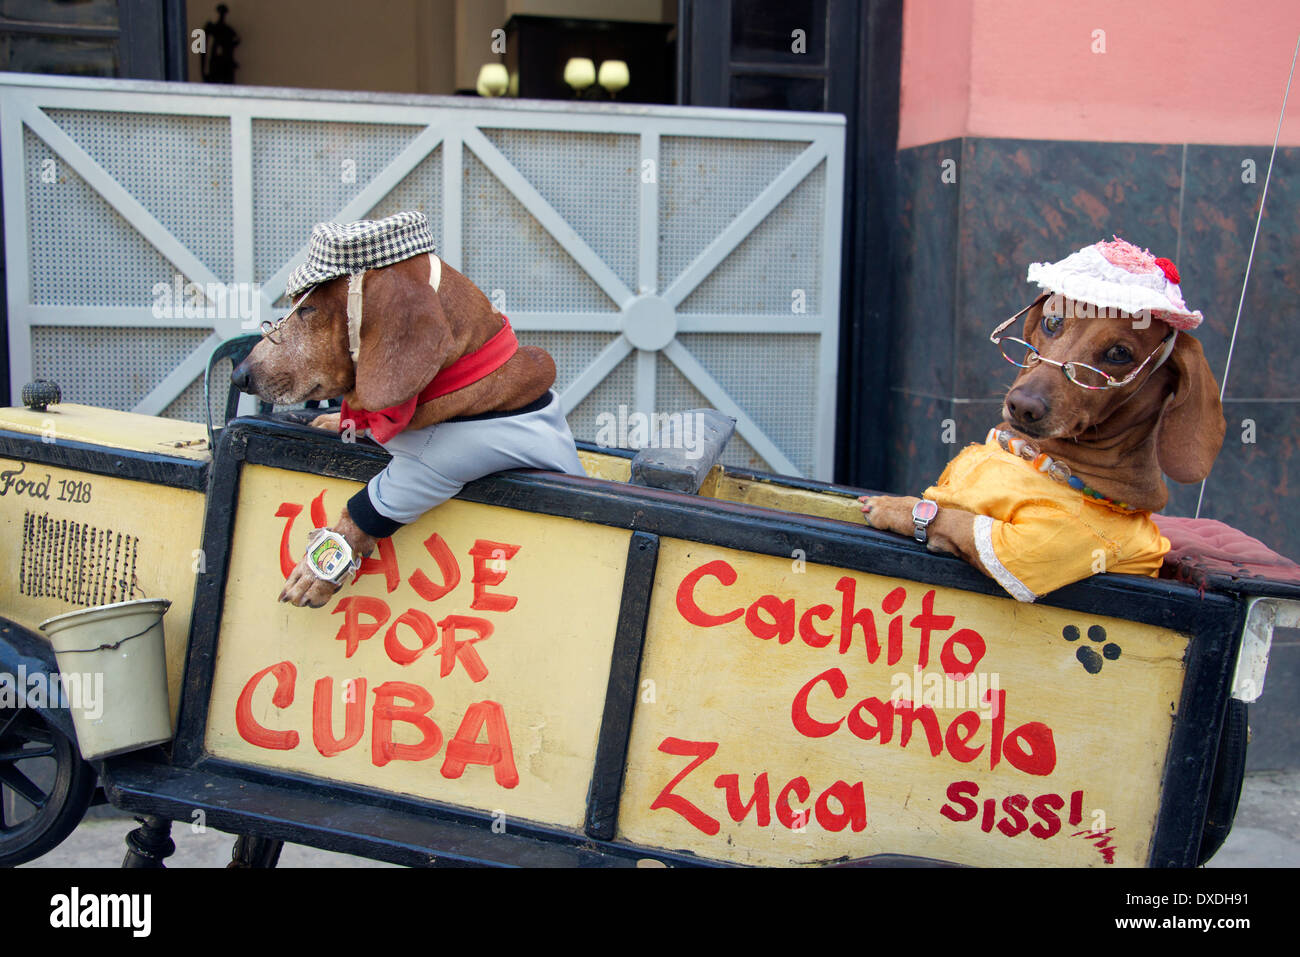 Deux chiens habillés de tissus humains assis dans la vieille Havane Cuba voiture modèle Banque D'Images